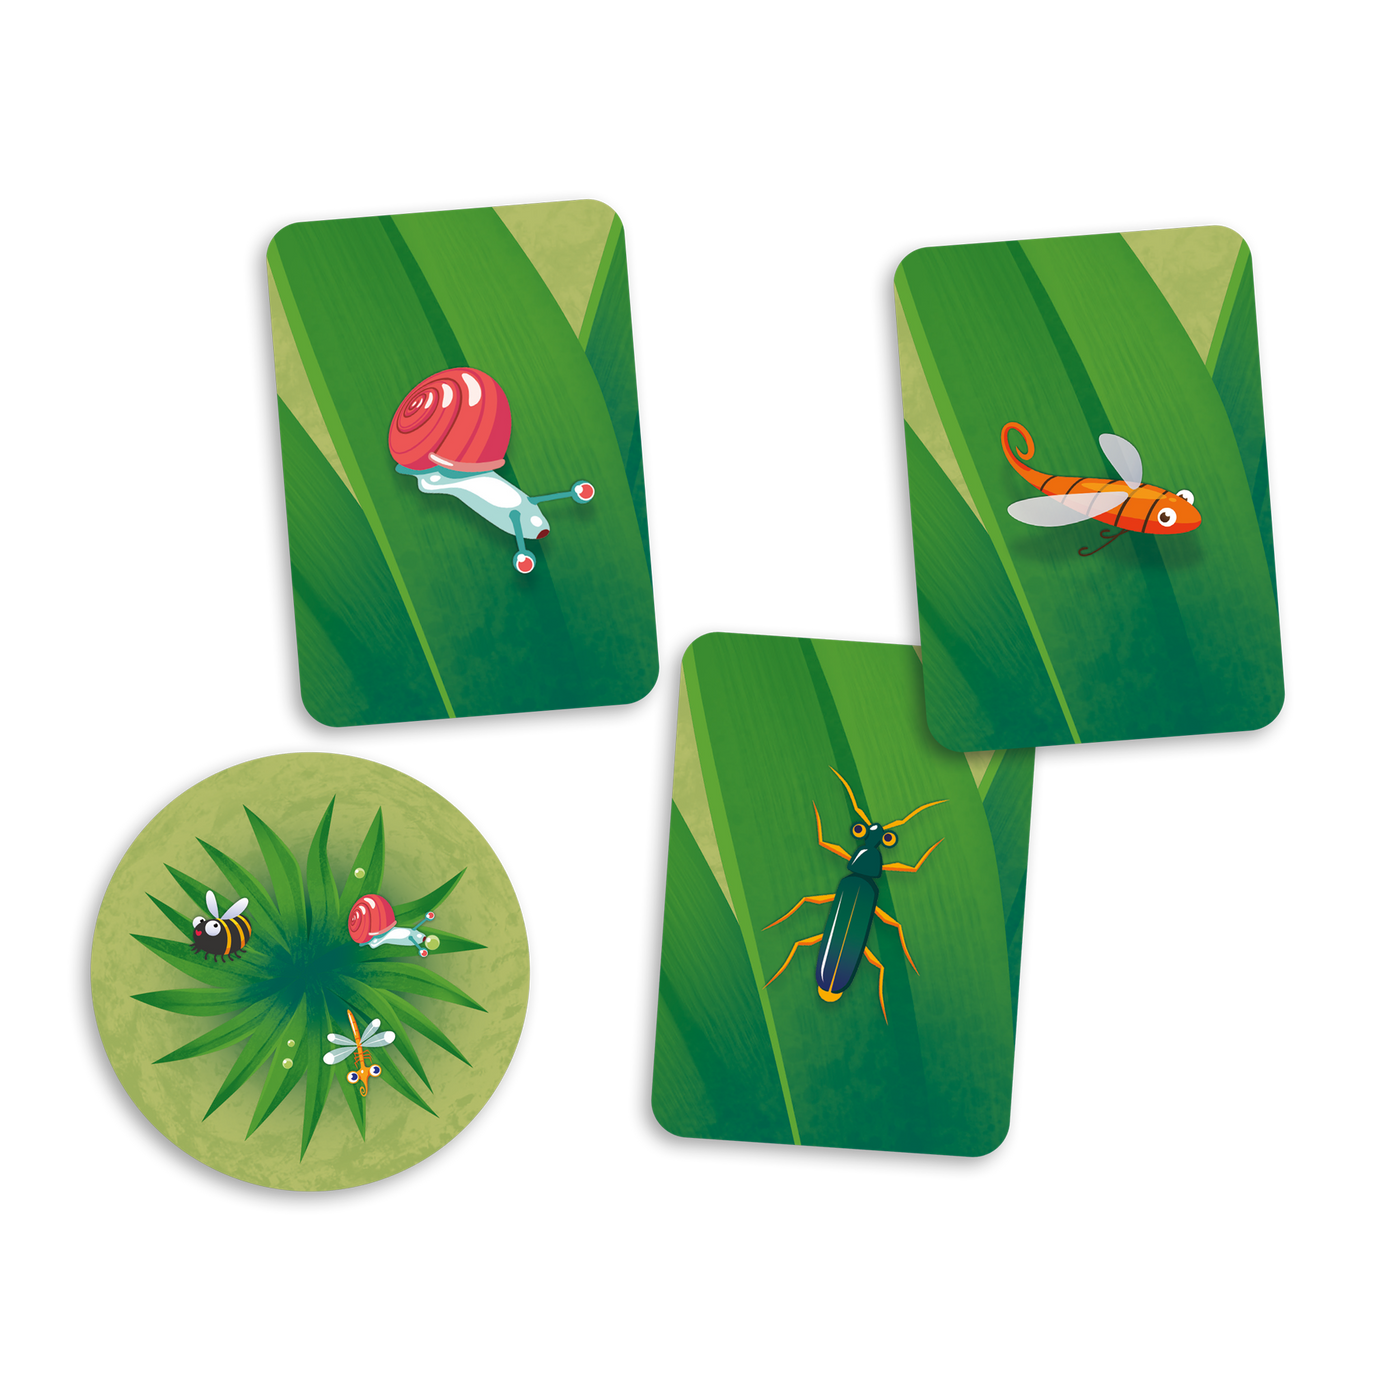 Chasseurs en herbe - Exemples de carte-herbe (1) et cartes-bestioles (escargot rose, moustique orange et insecte bleu-vert)